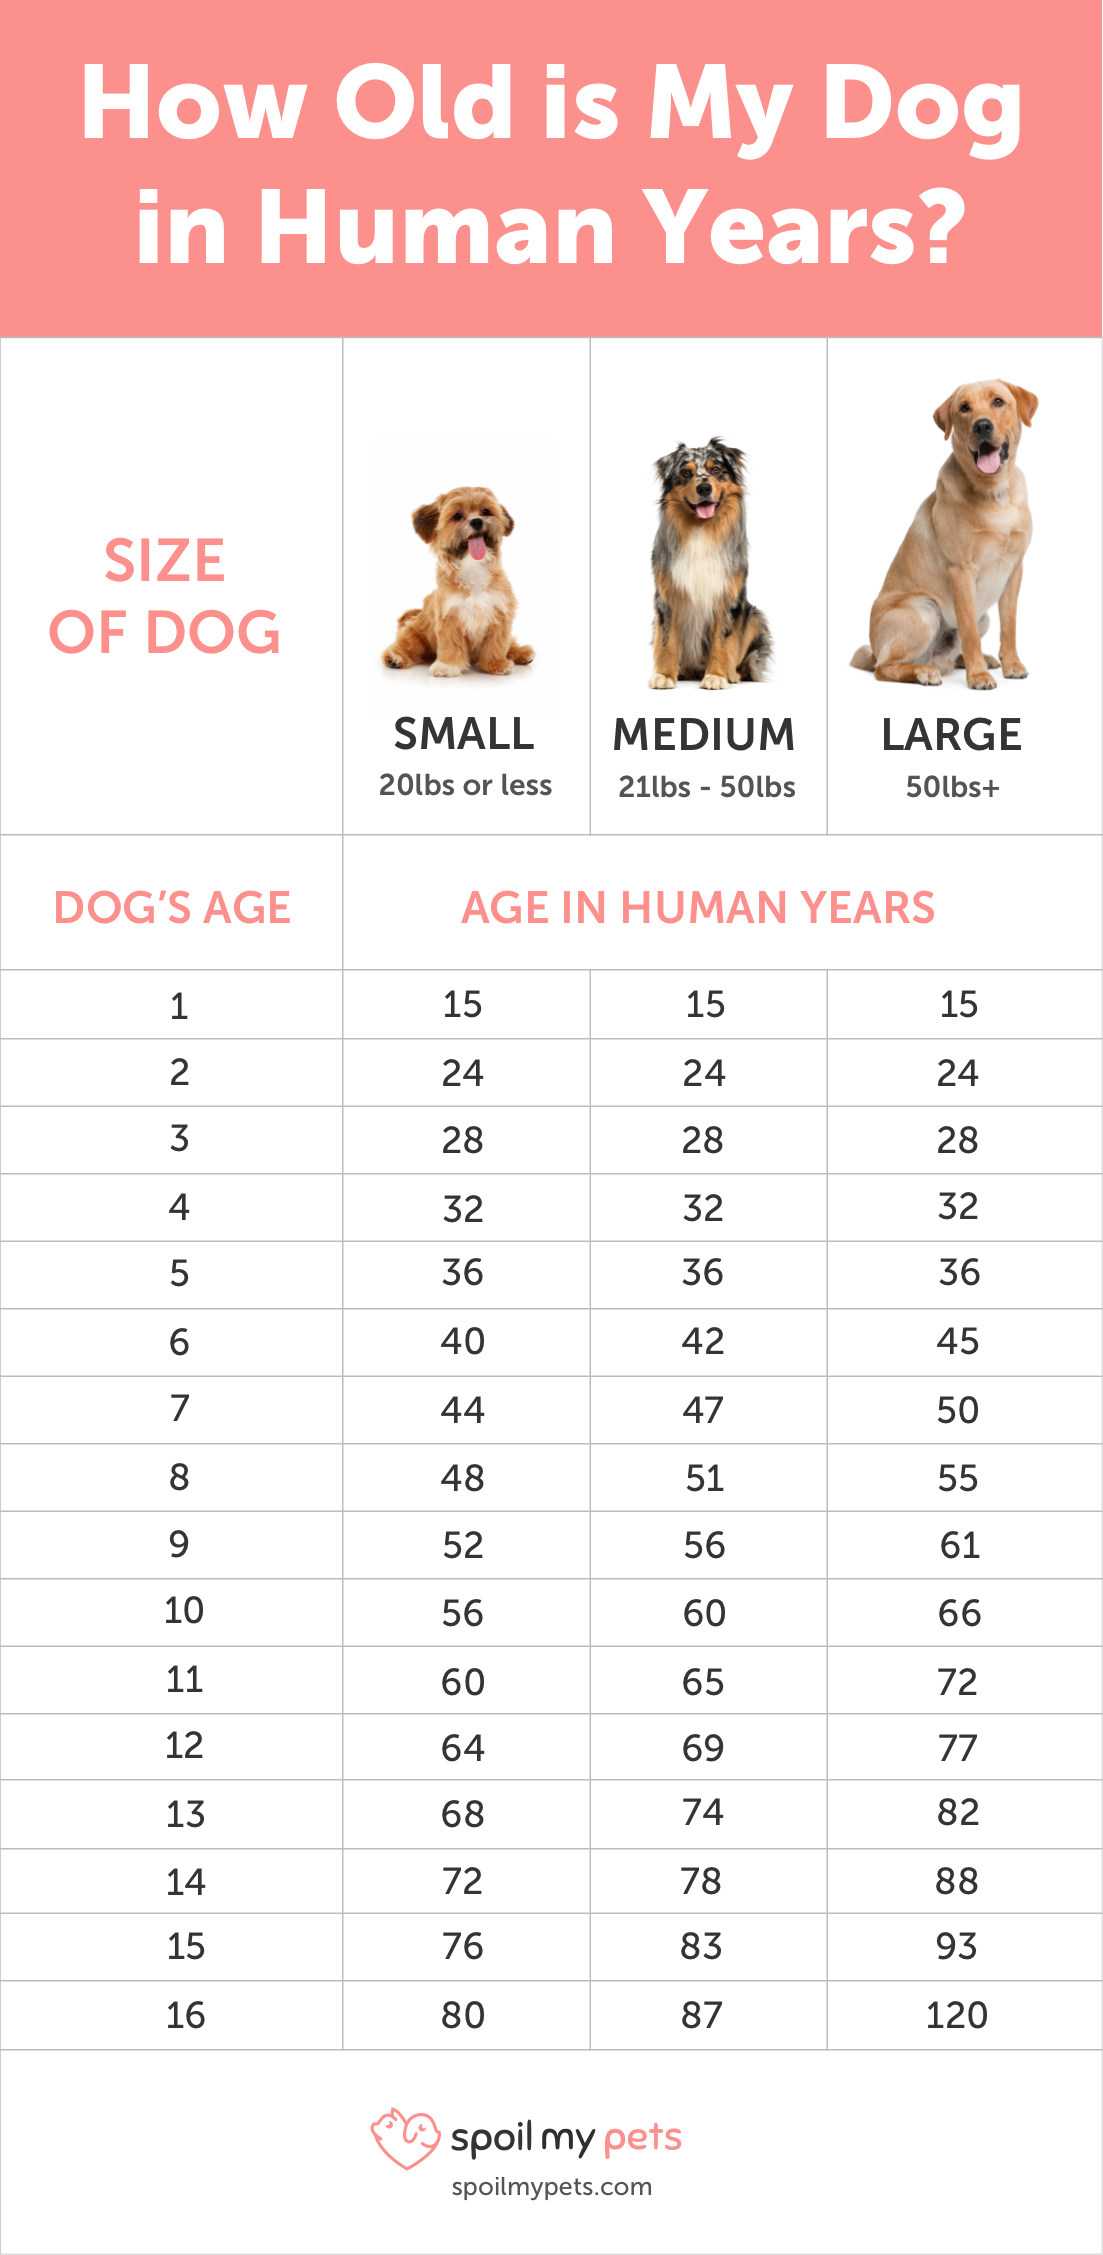 Dog Age Chart